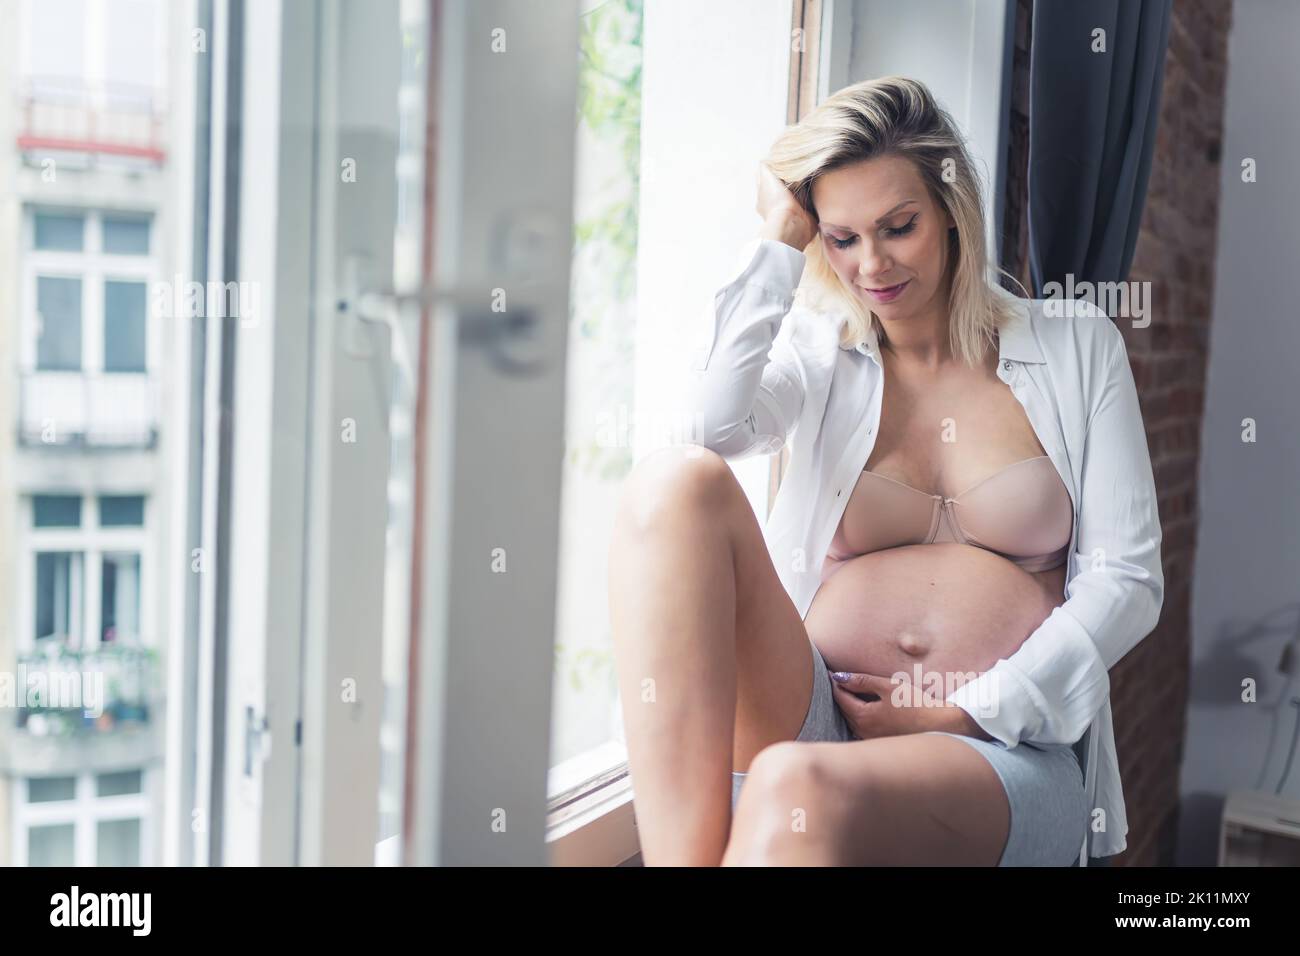 Donna sposata incinta seduta su un davanzale a casa, toccando il ventre e pensando di essere presto in grado di tenere il neonato. Foto di alta qualità Foto Stock